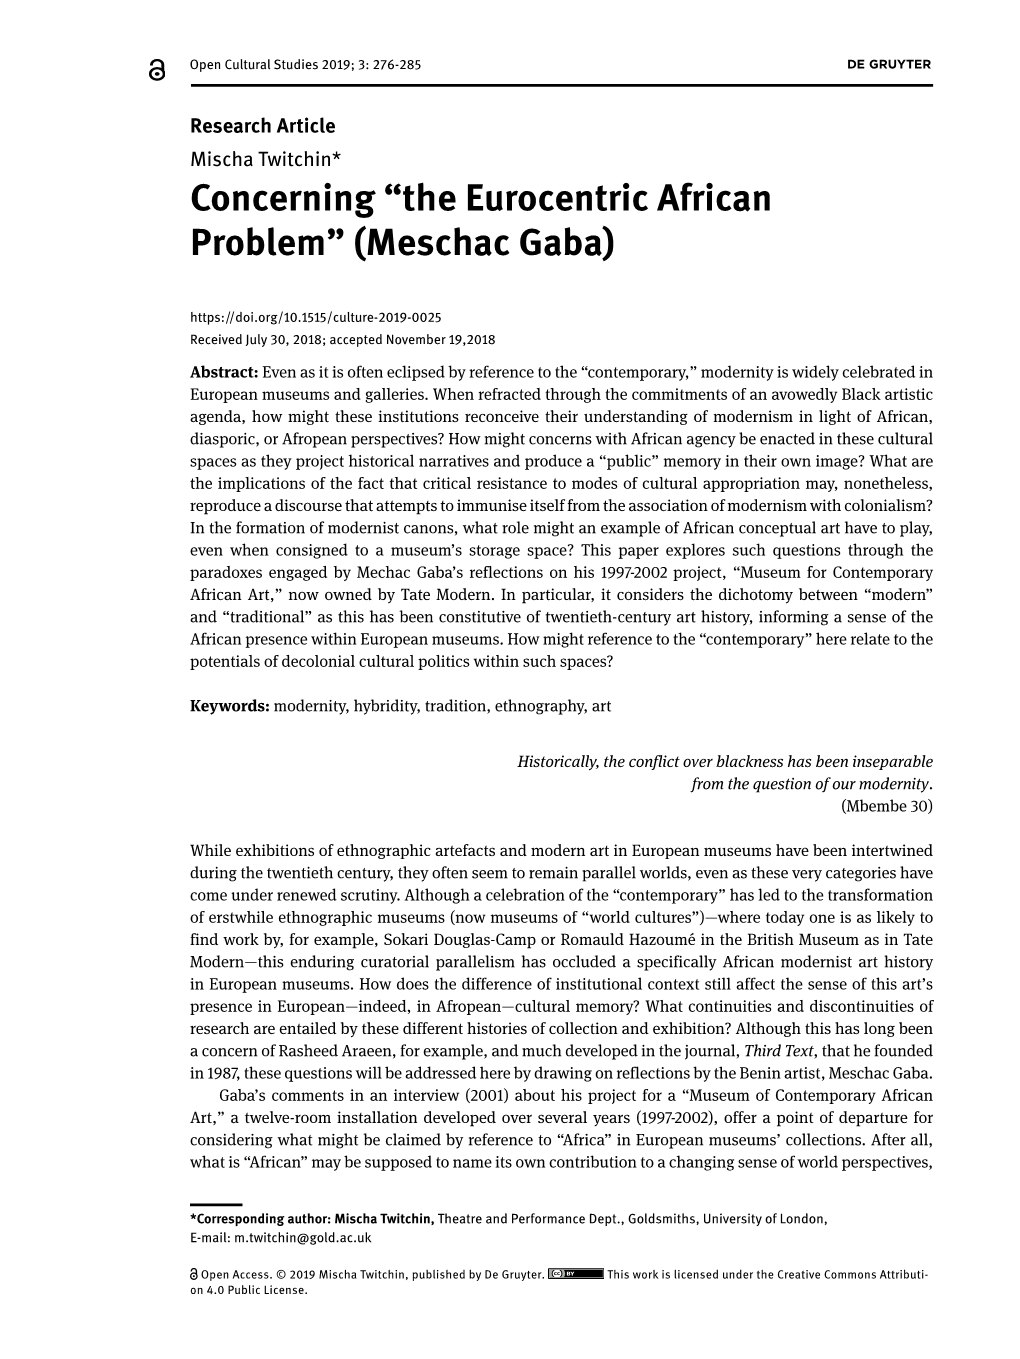 The Eurocentric African Problem” (Meschac Gaba)